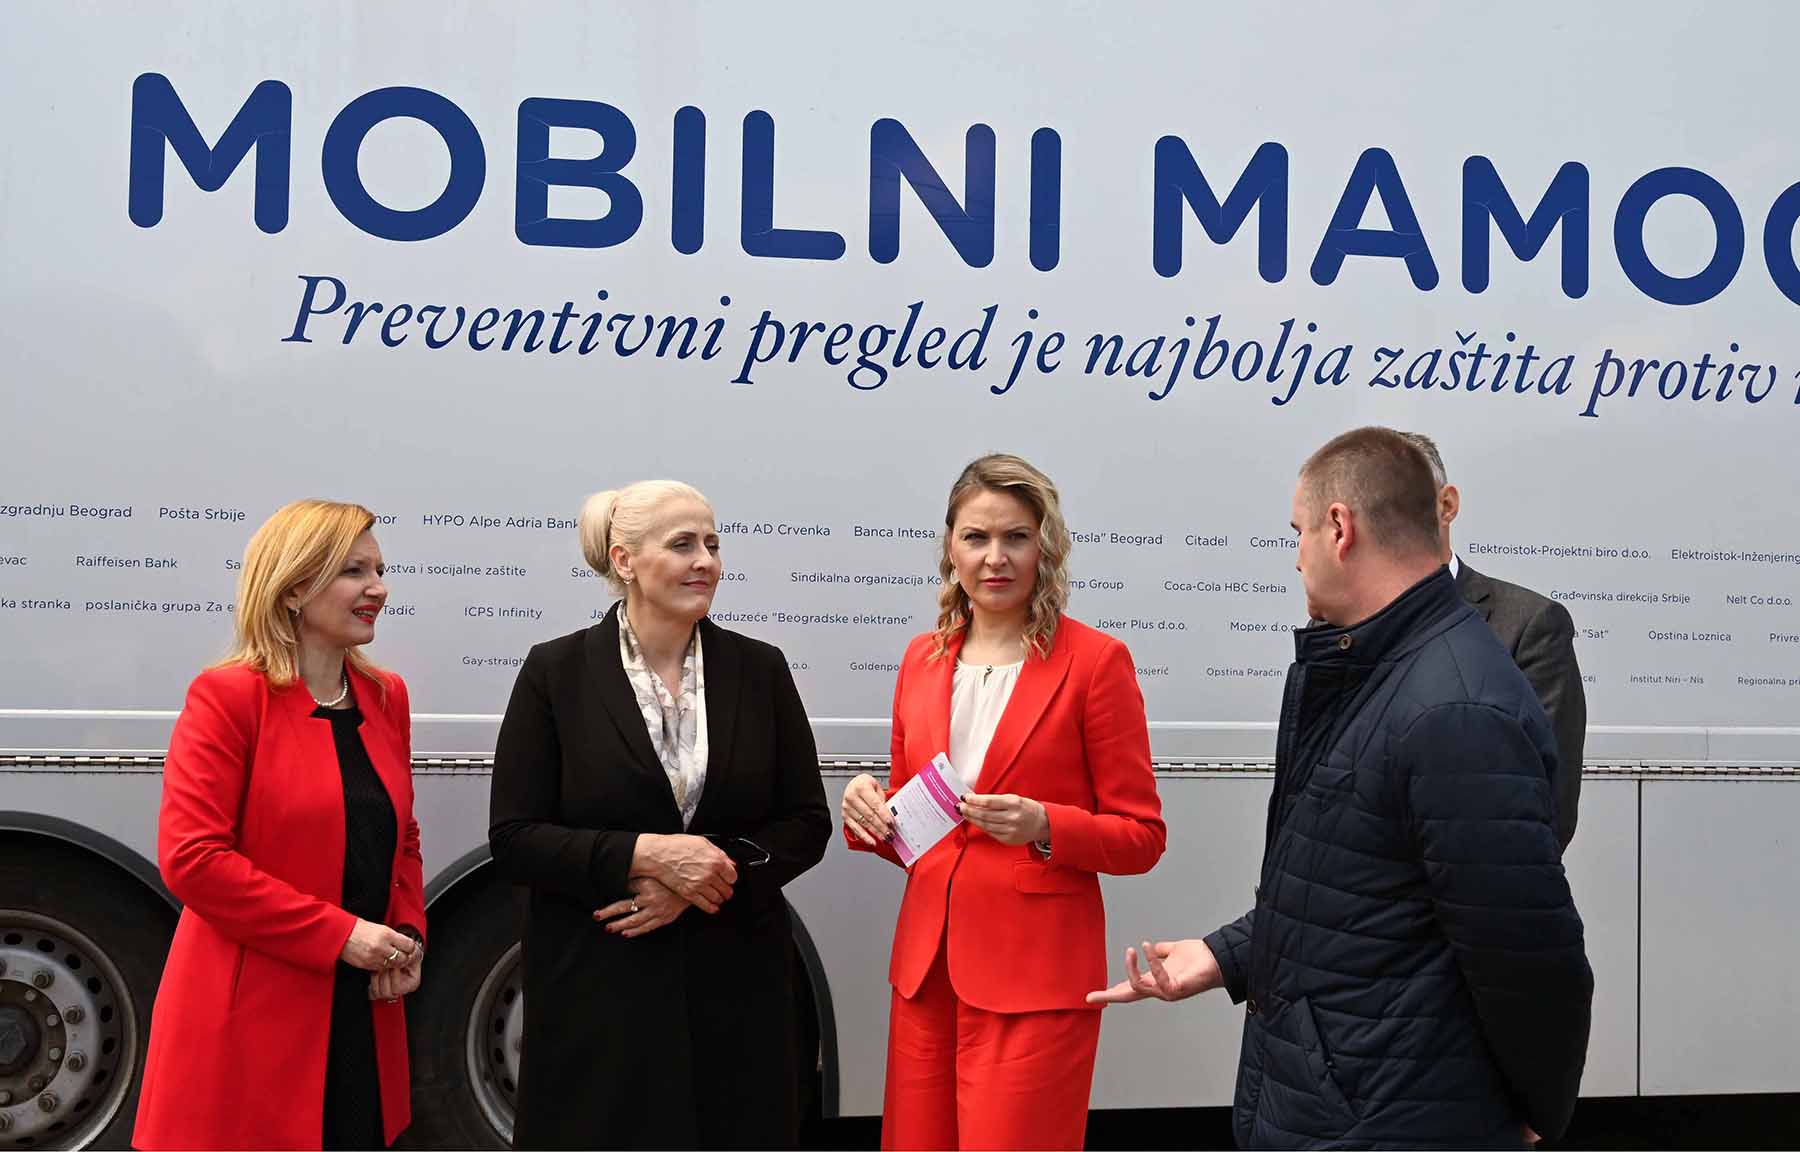 Катарина Томашевић позвала жене запослене у Министарству унутрашњих послова да обаве превентивни мамографски преглед